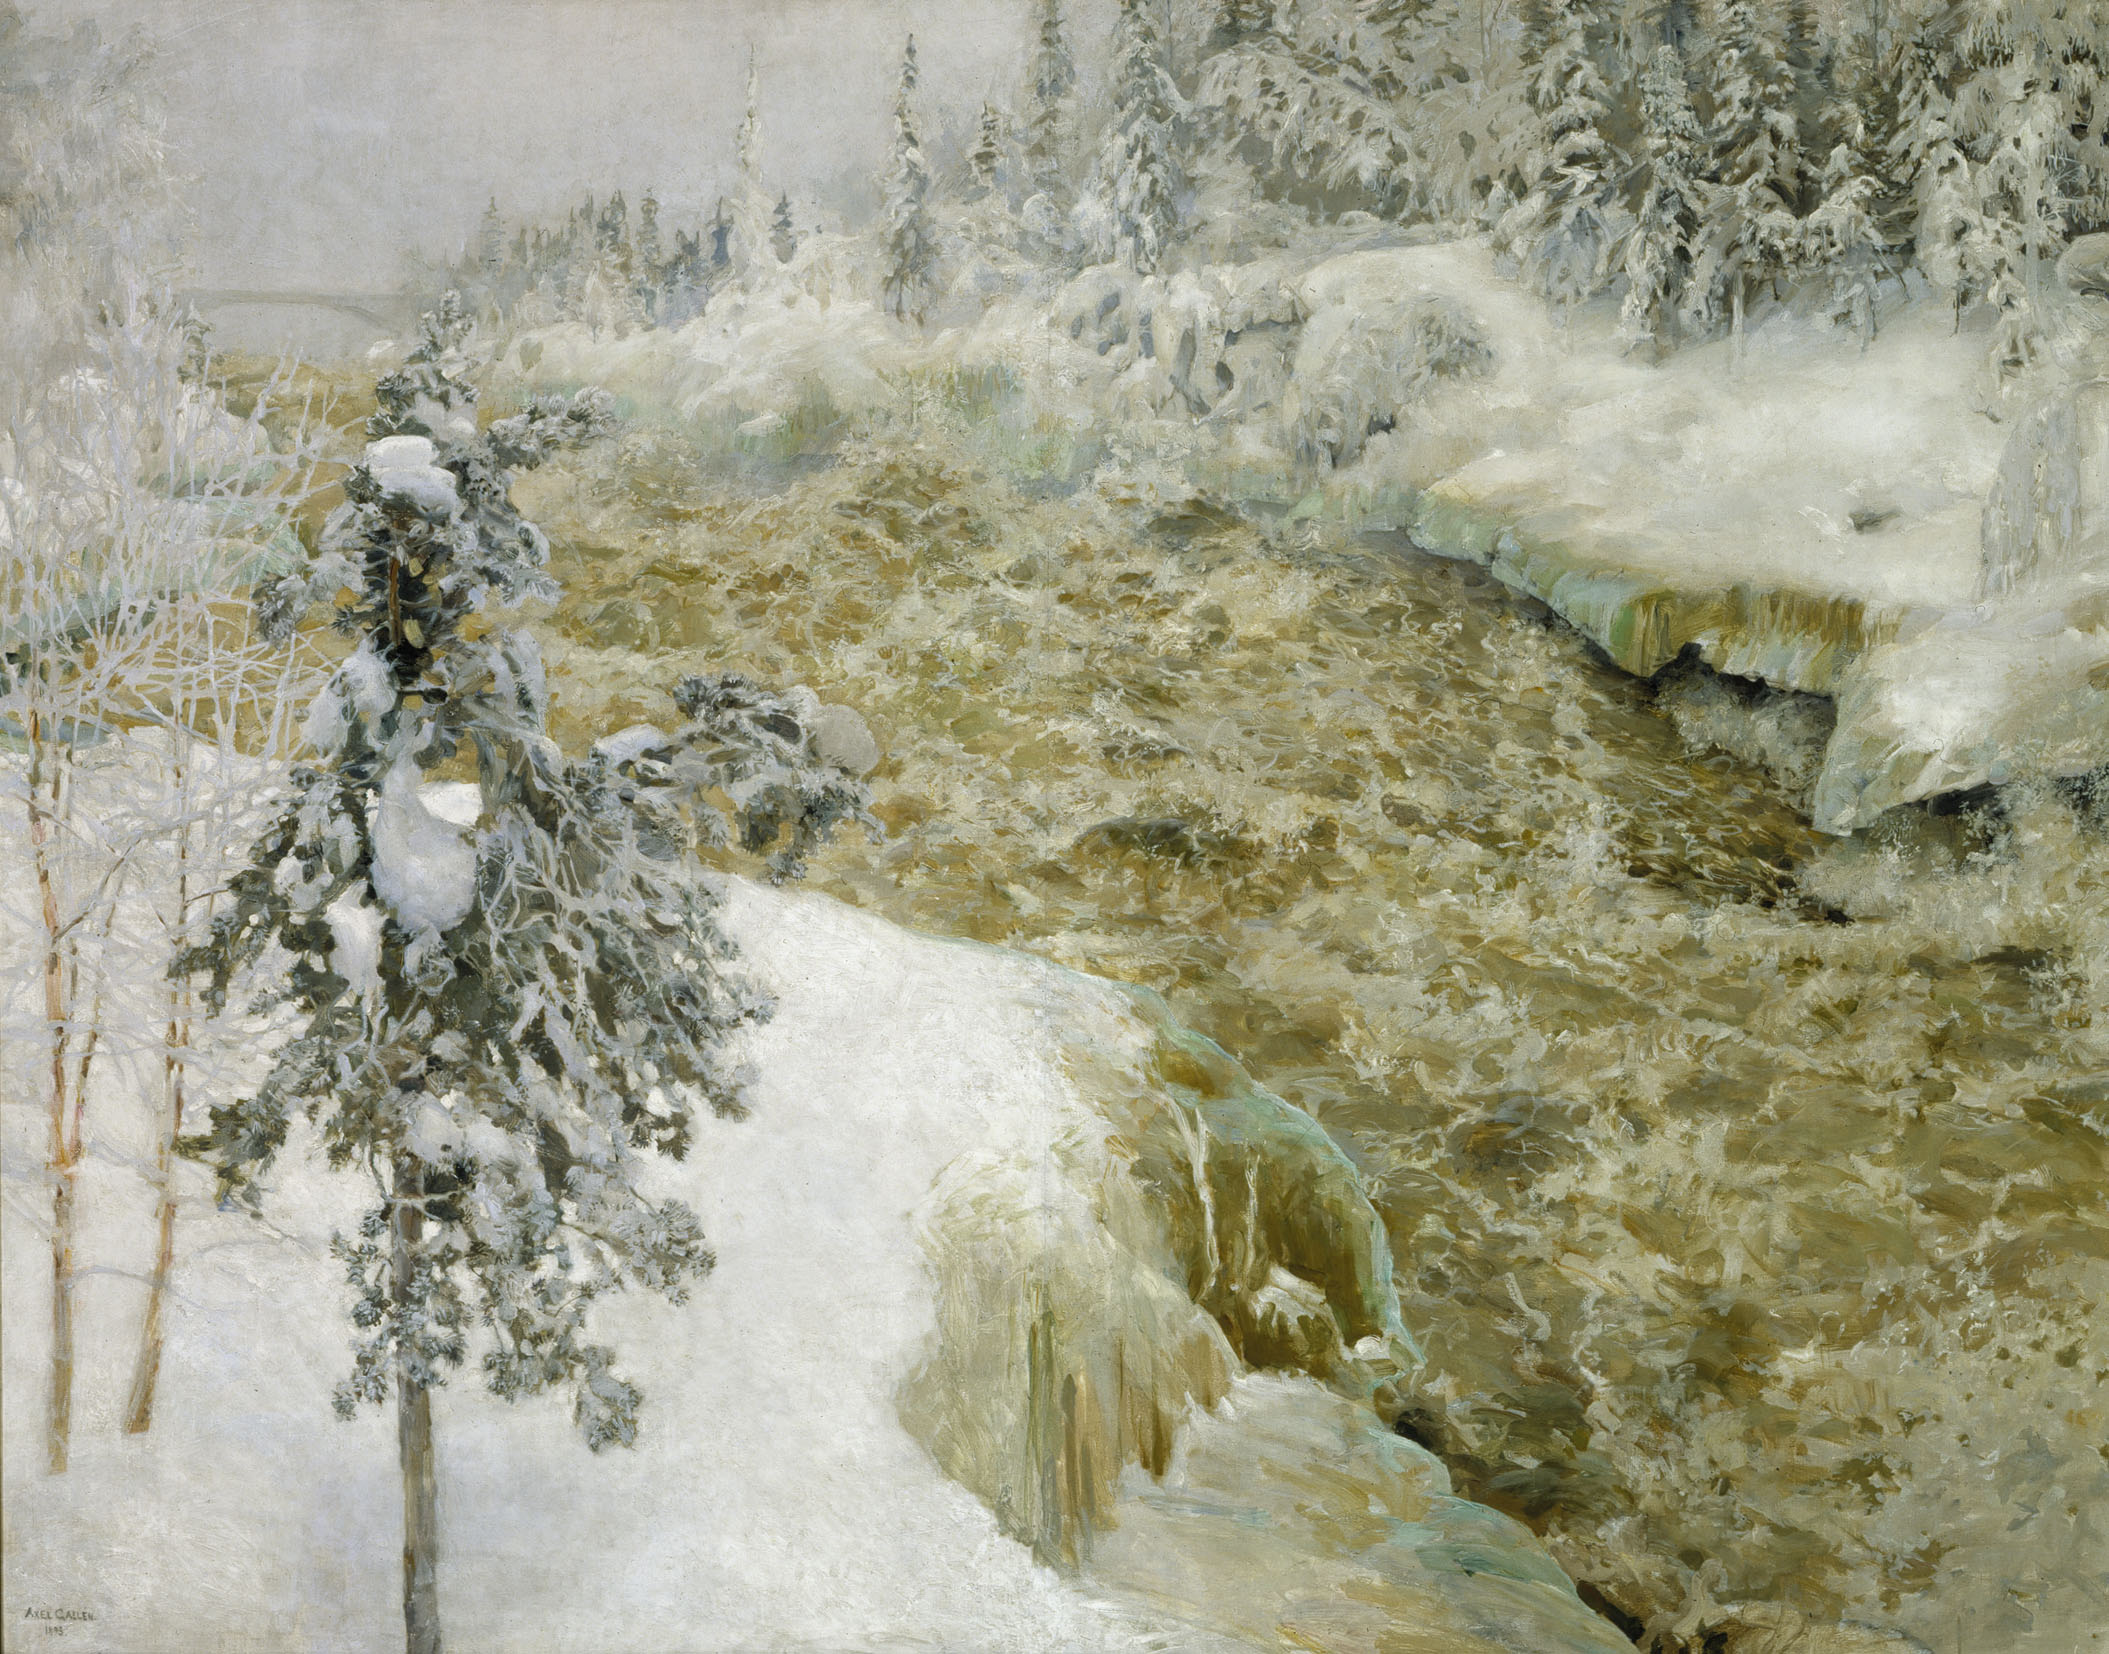 Cascada Imatra cu zăpadă by Akseli Gallen-Kallela - 1893 - 153 x 194 cm 